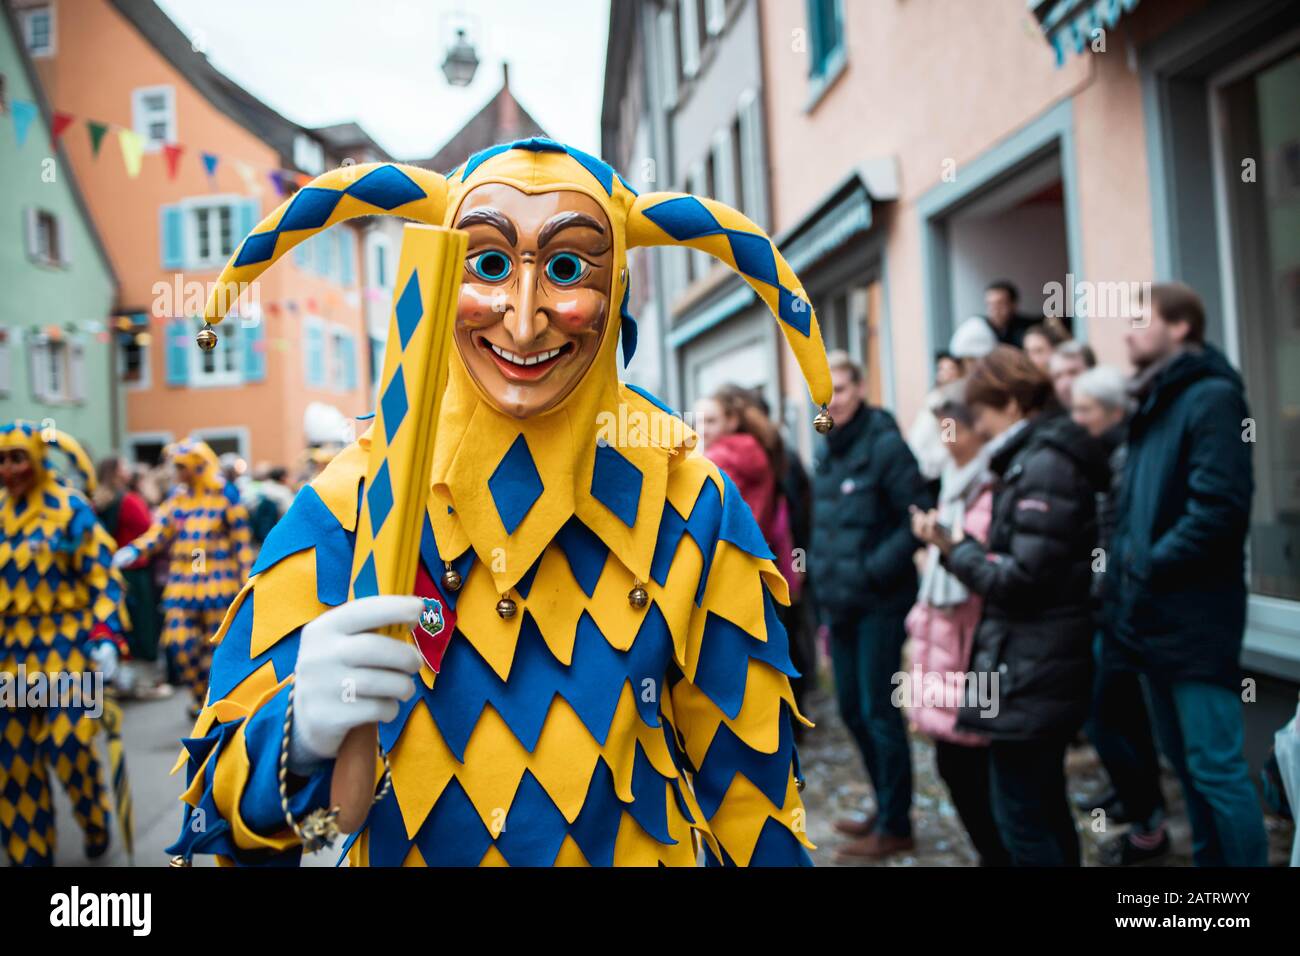 Bajass de Waldkirch - la figura tonta en la túnica amarillo-azul muestra un objeto tradicional, durante el desfile de carnaval en Staufen, al sur de Alemania Foto de stock